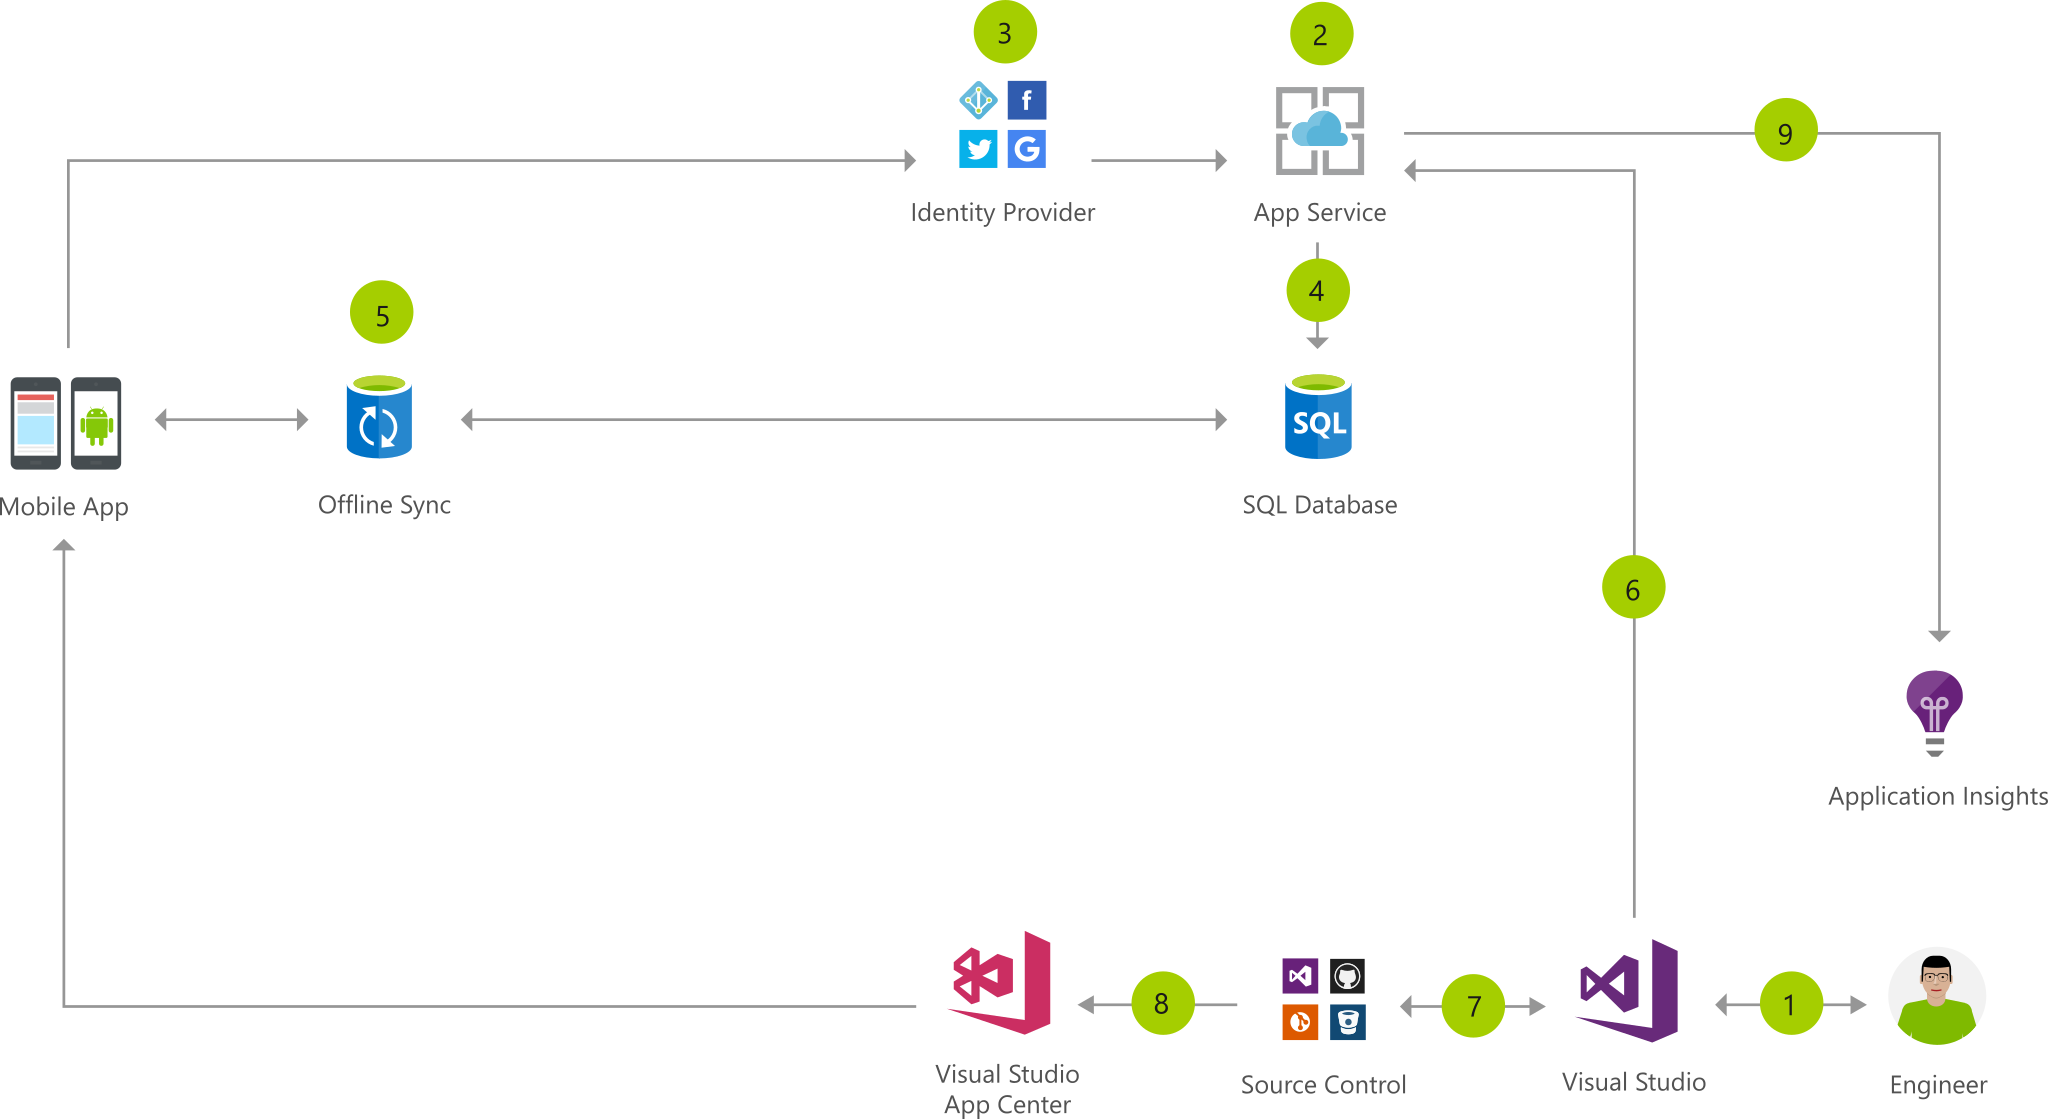 Diagramme d’architecture montrant un ingénieur qui crée une application dans Visual Studio pour la déployer avec App Services et pour l’analyser avec Application Insights.